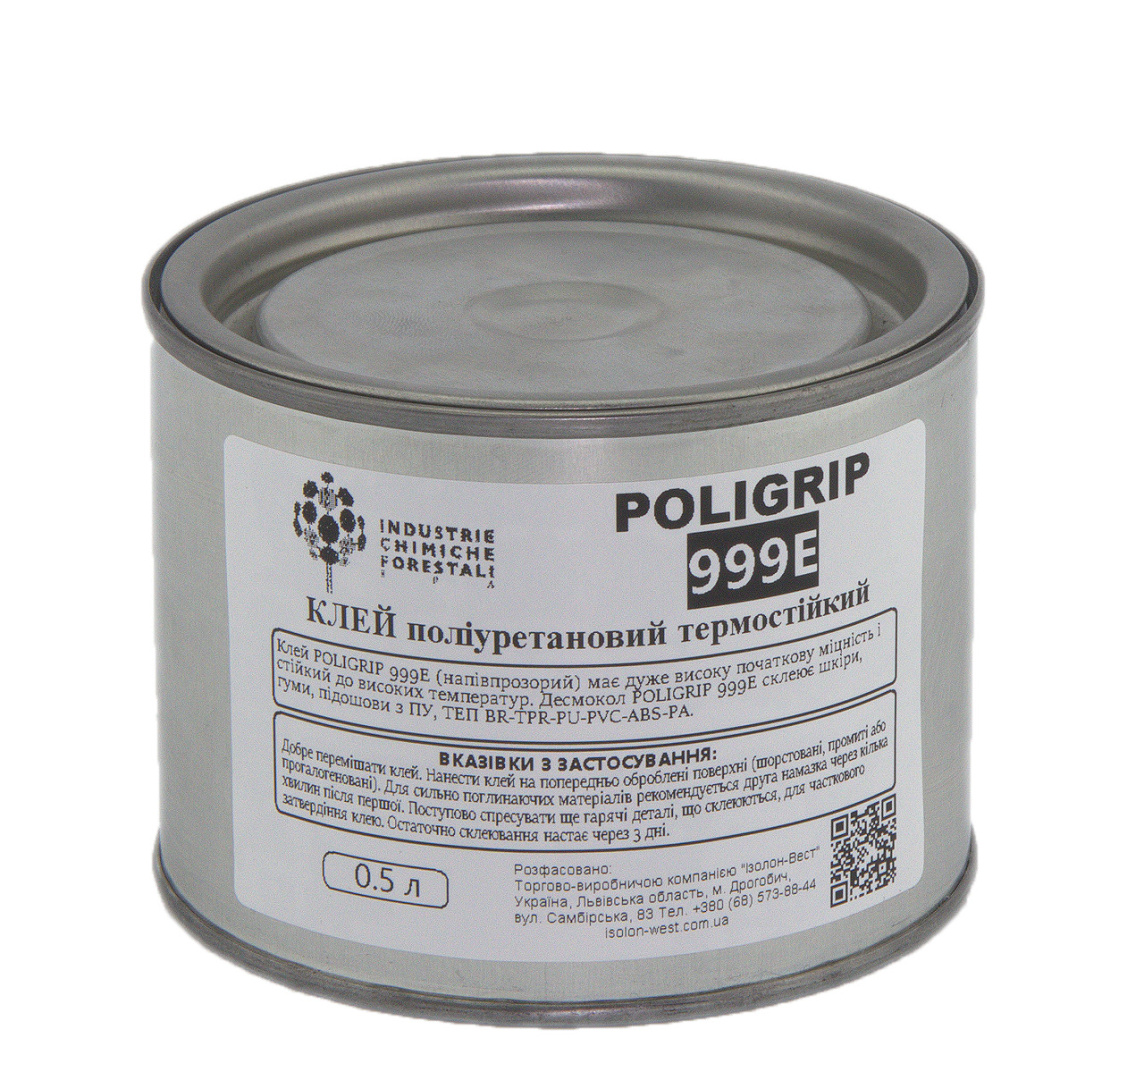 Клей Poligrip 999 E - полиуретановый клей с повышенной термоустойчивостью. Италия детальная фотка